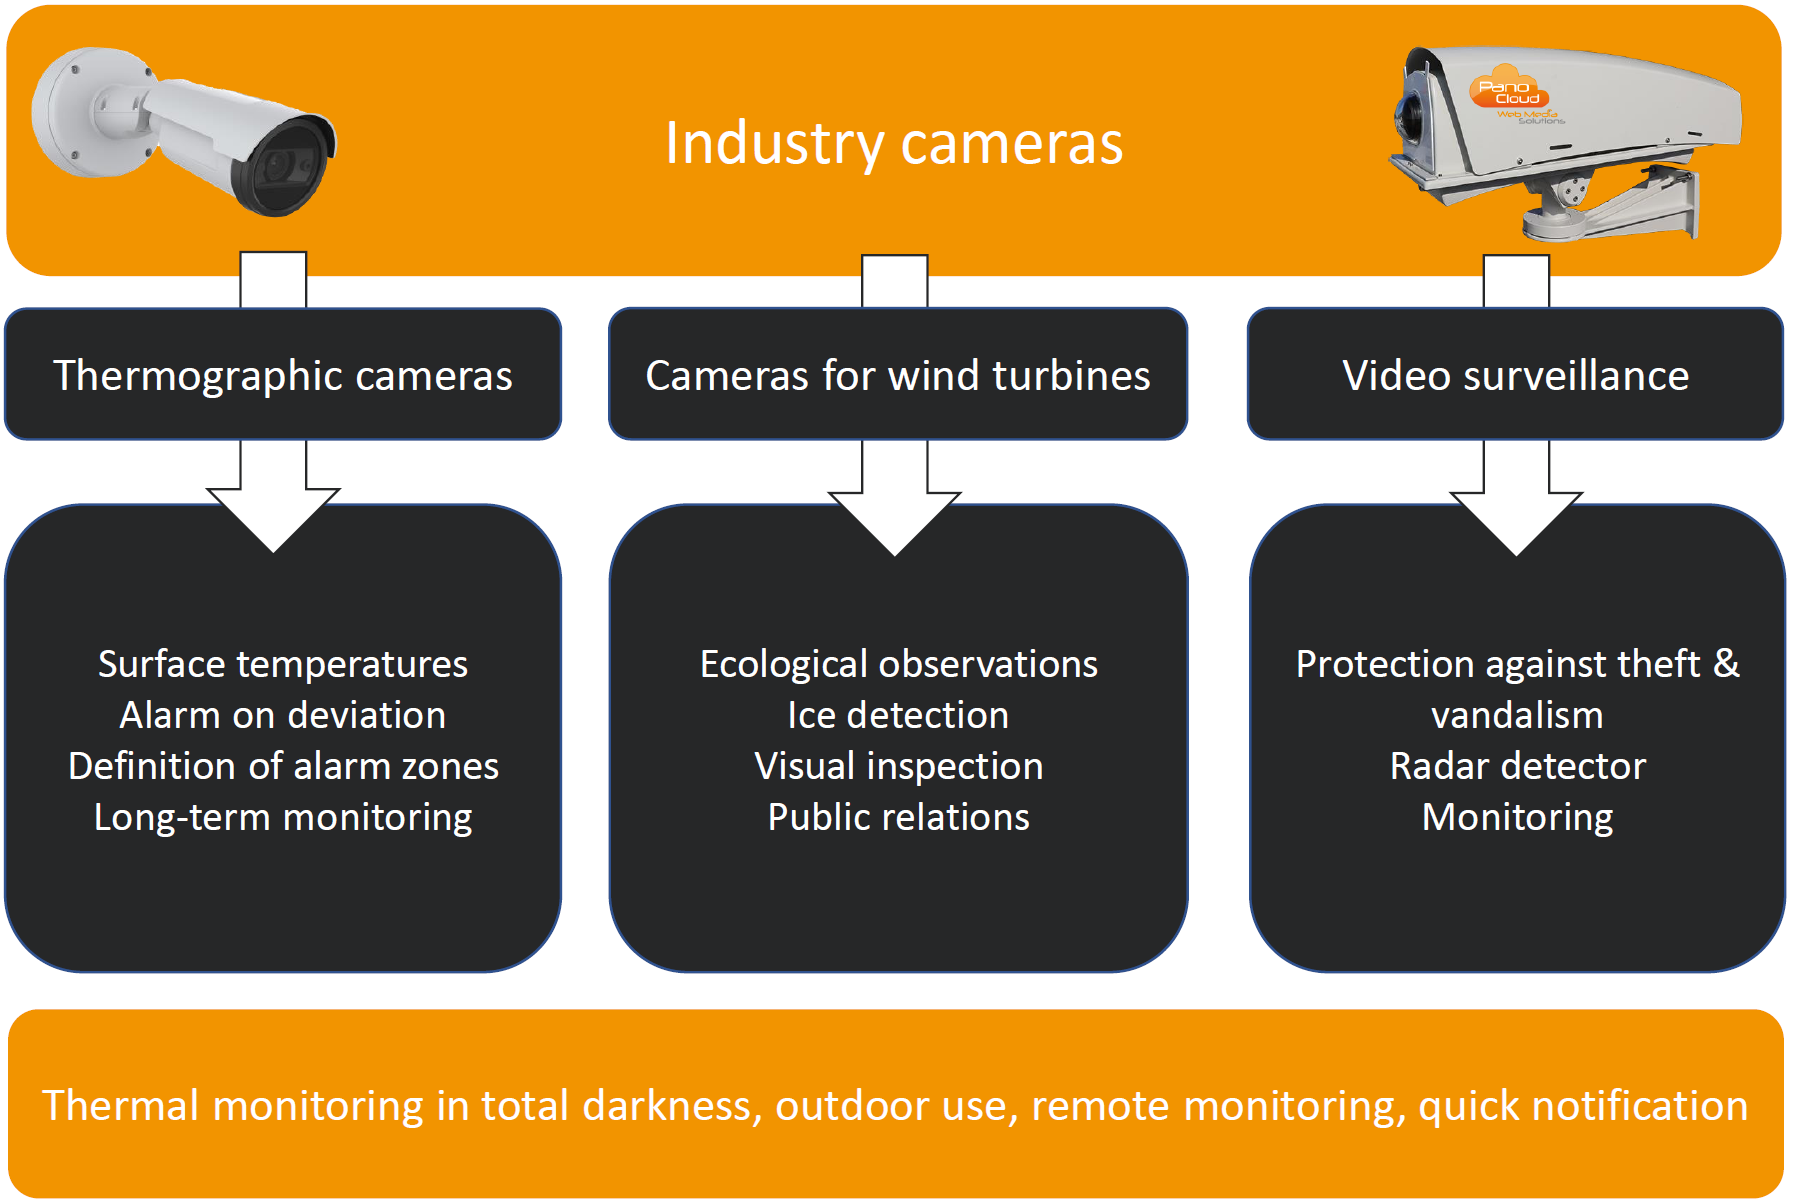 Industry camera solution